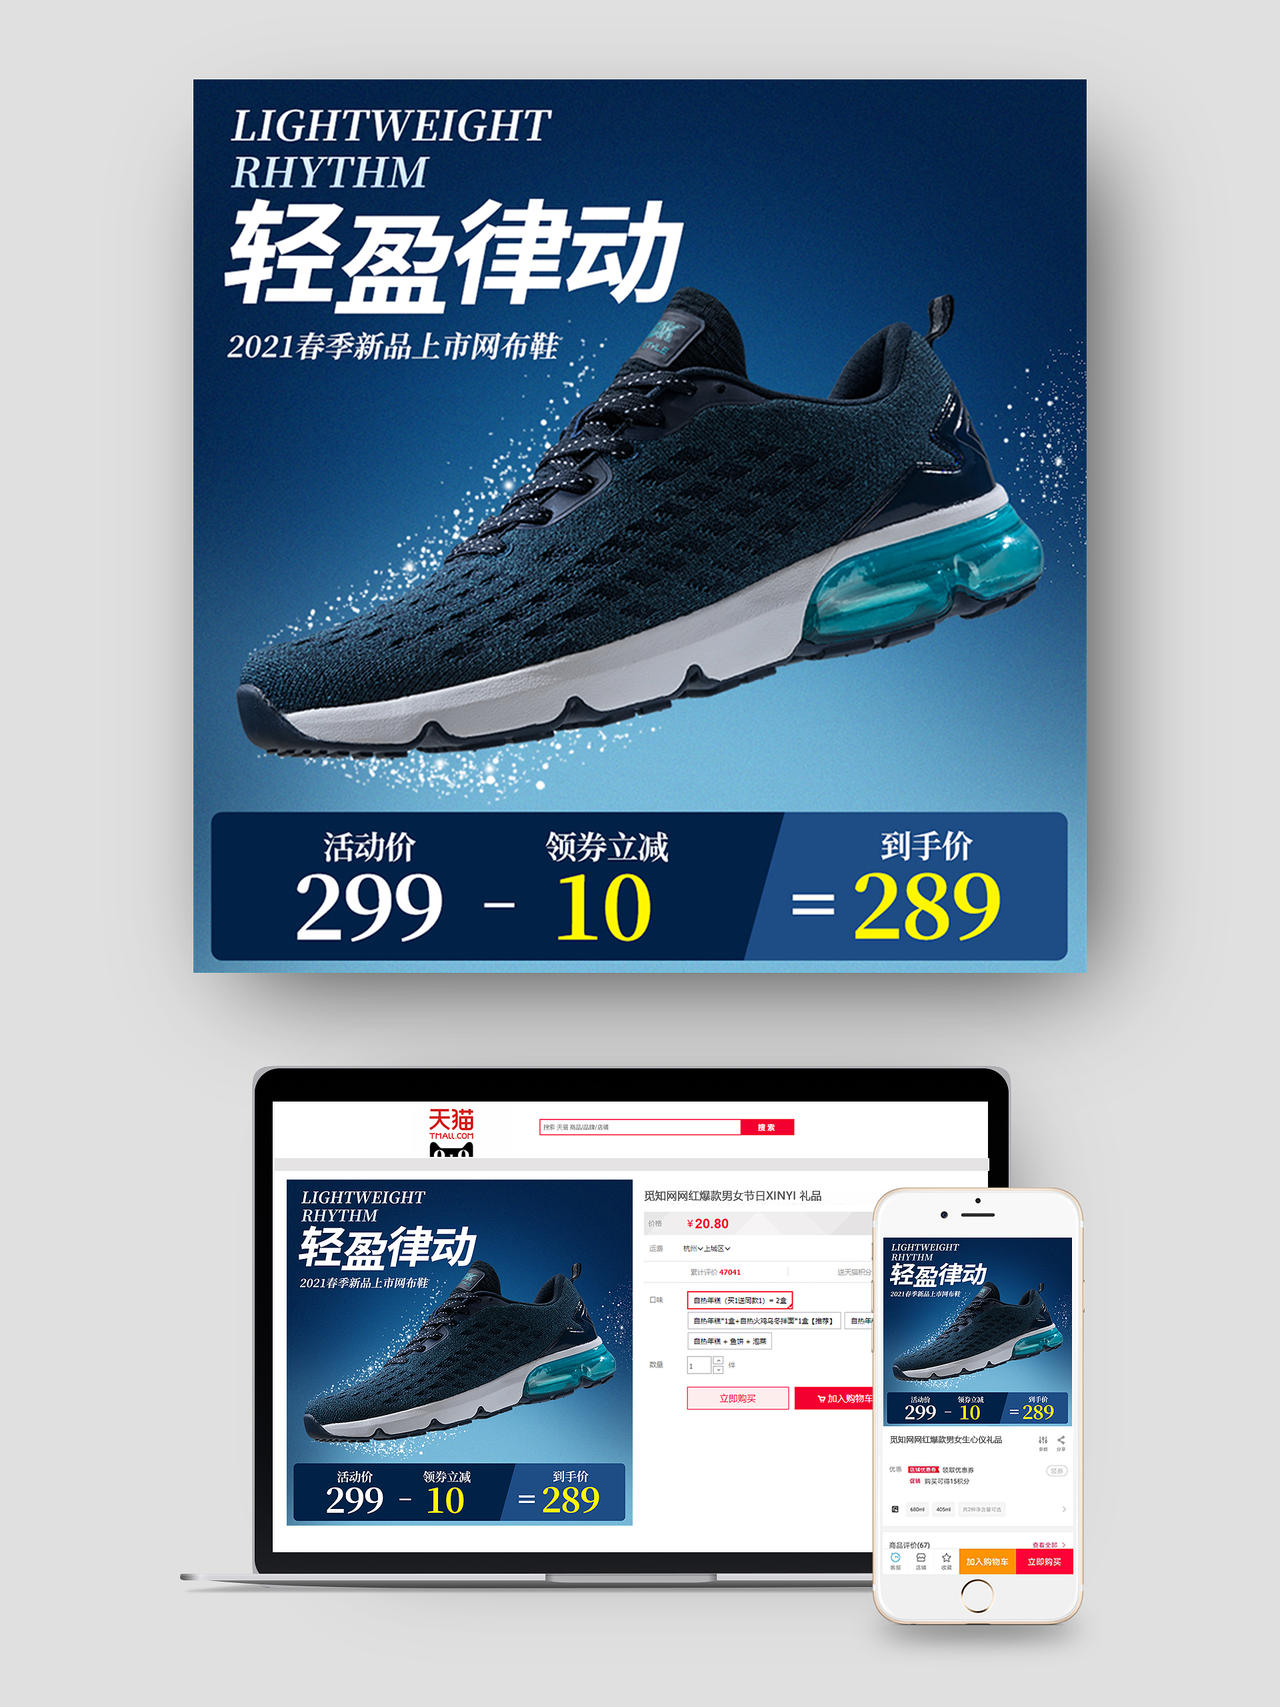 蓝色轻盈律动新品上市网布鞋跑步鞋活动主图天猫跑步节主图